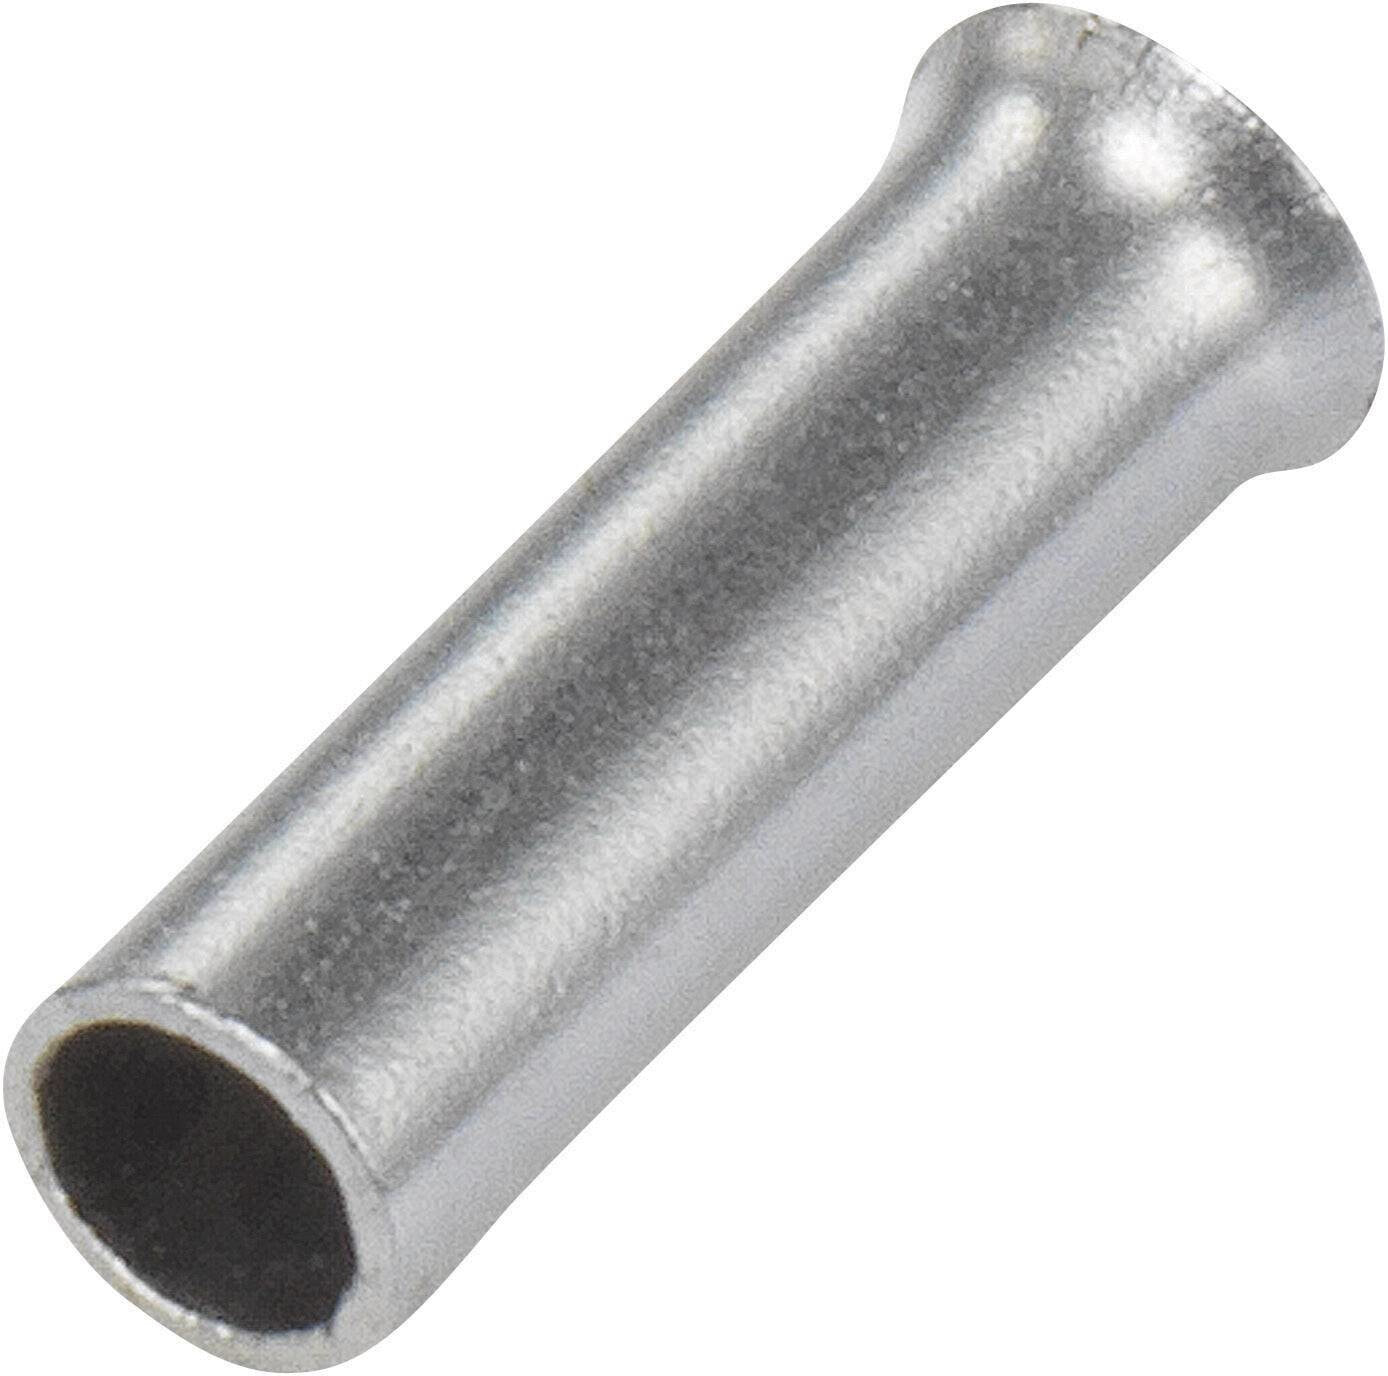 Conrad Electronic SE Conrad 1091261 - Wire end sleeve - Silver - Straight - Metallic - Copper - 1 mm²